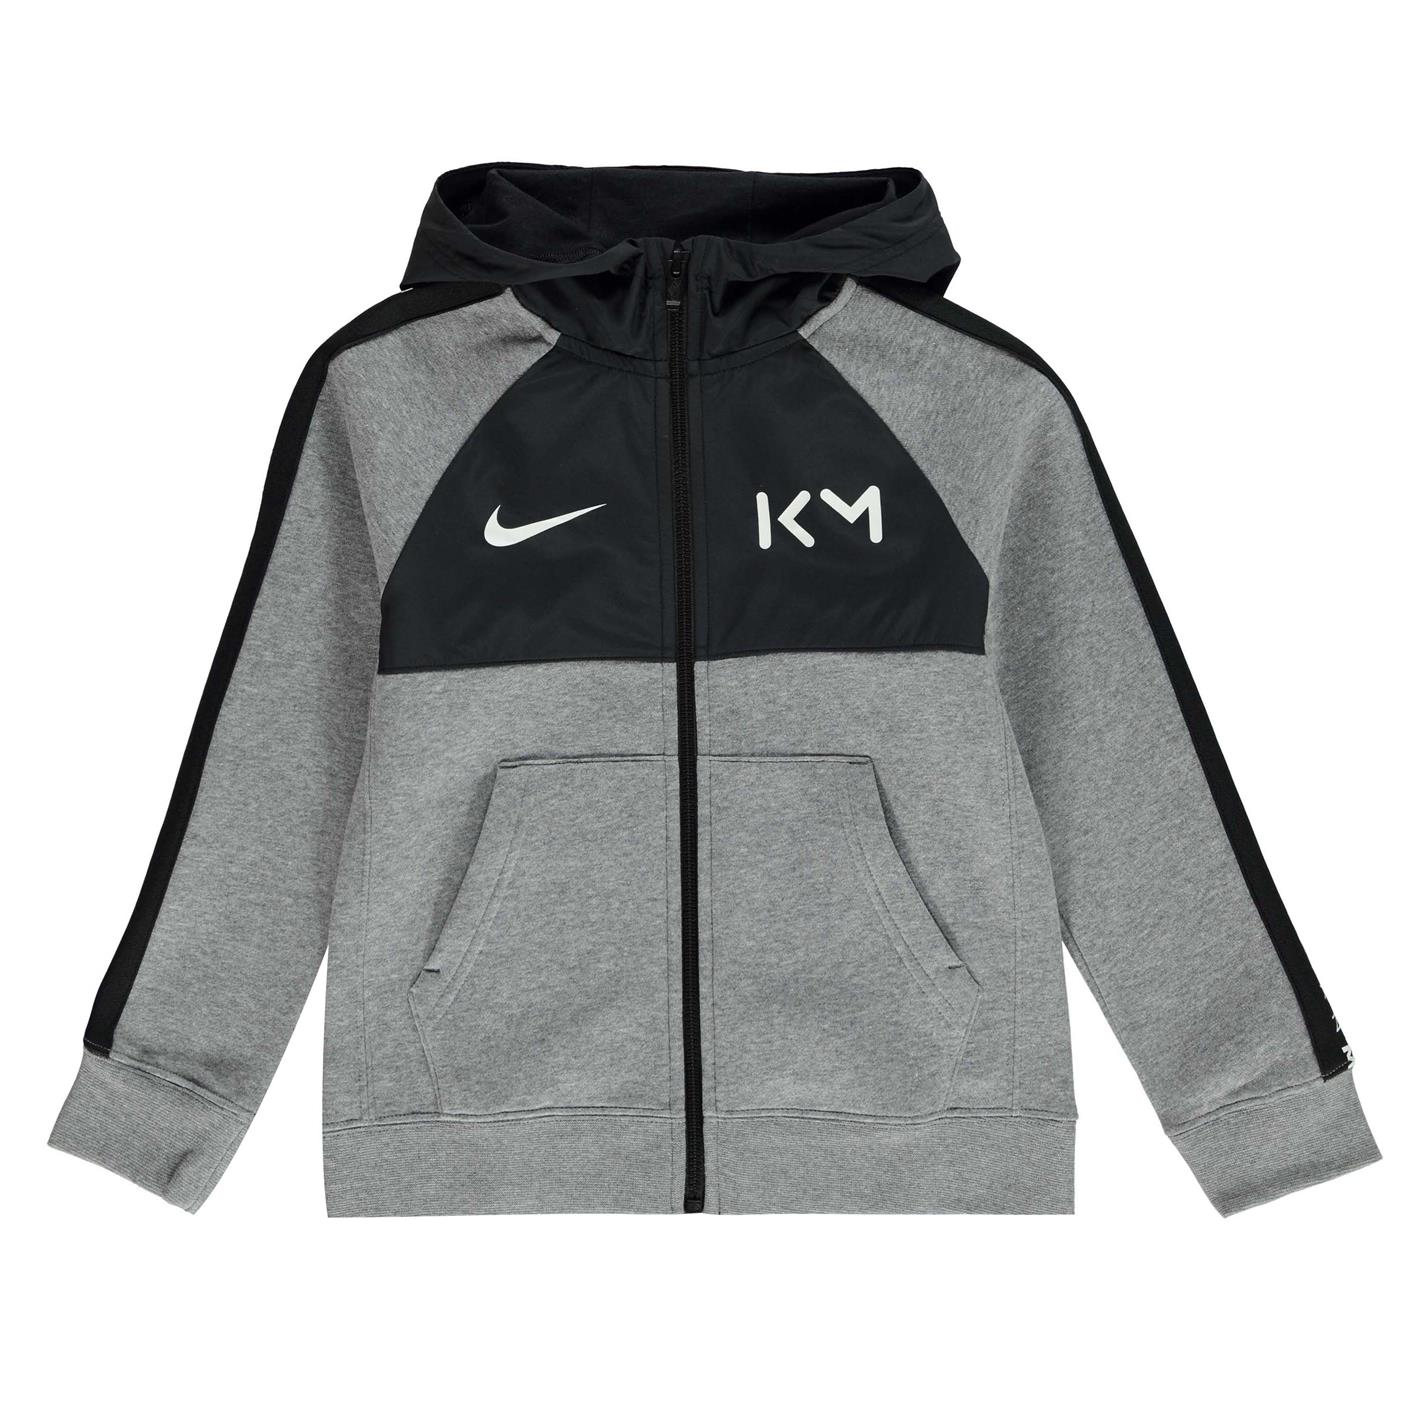 Bluze Nike Km B Hybrid gri negru